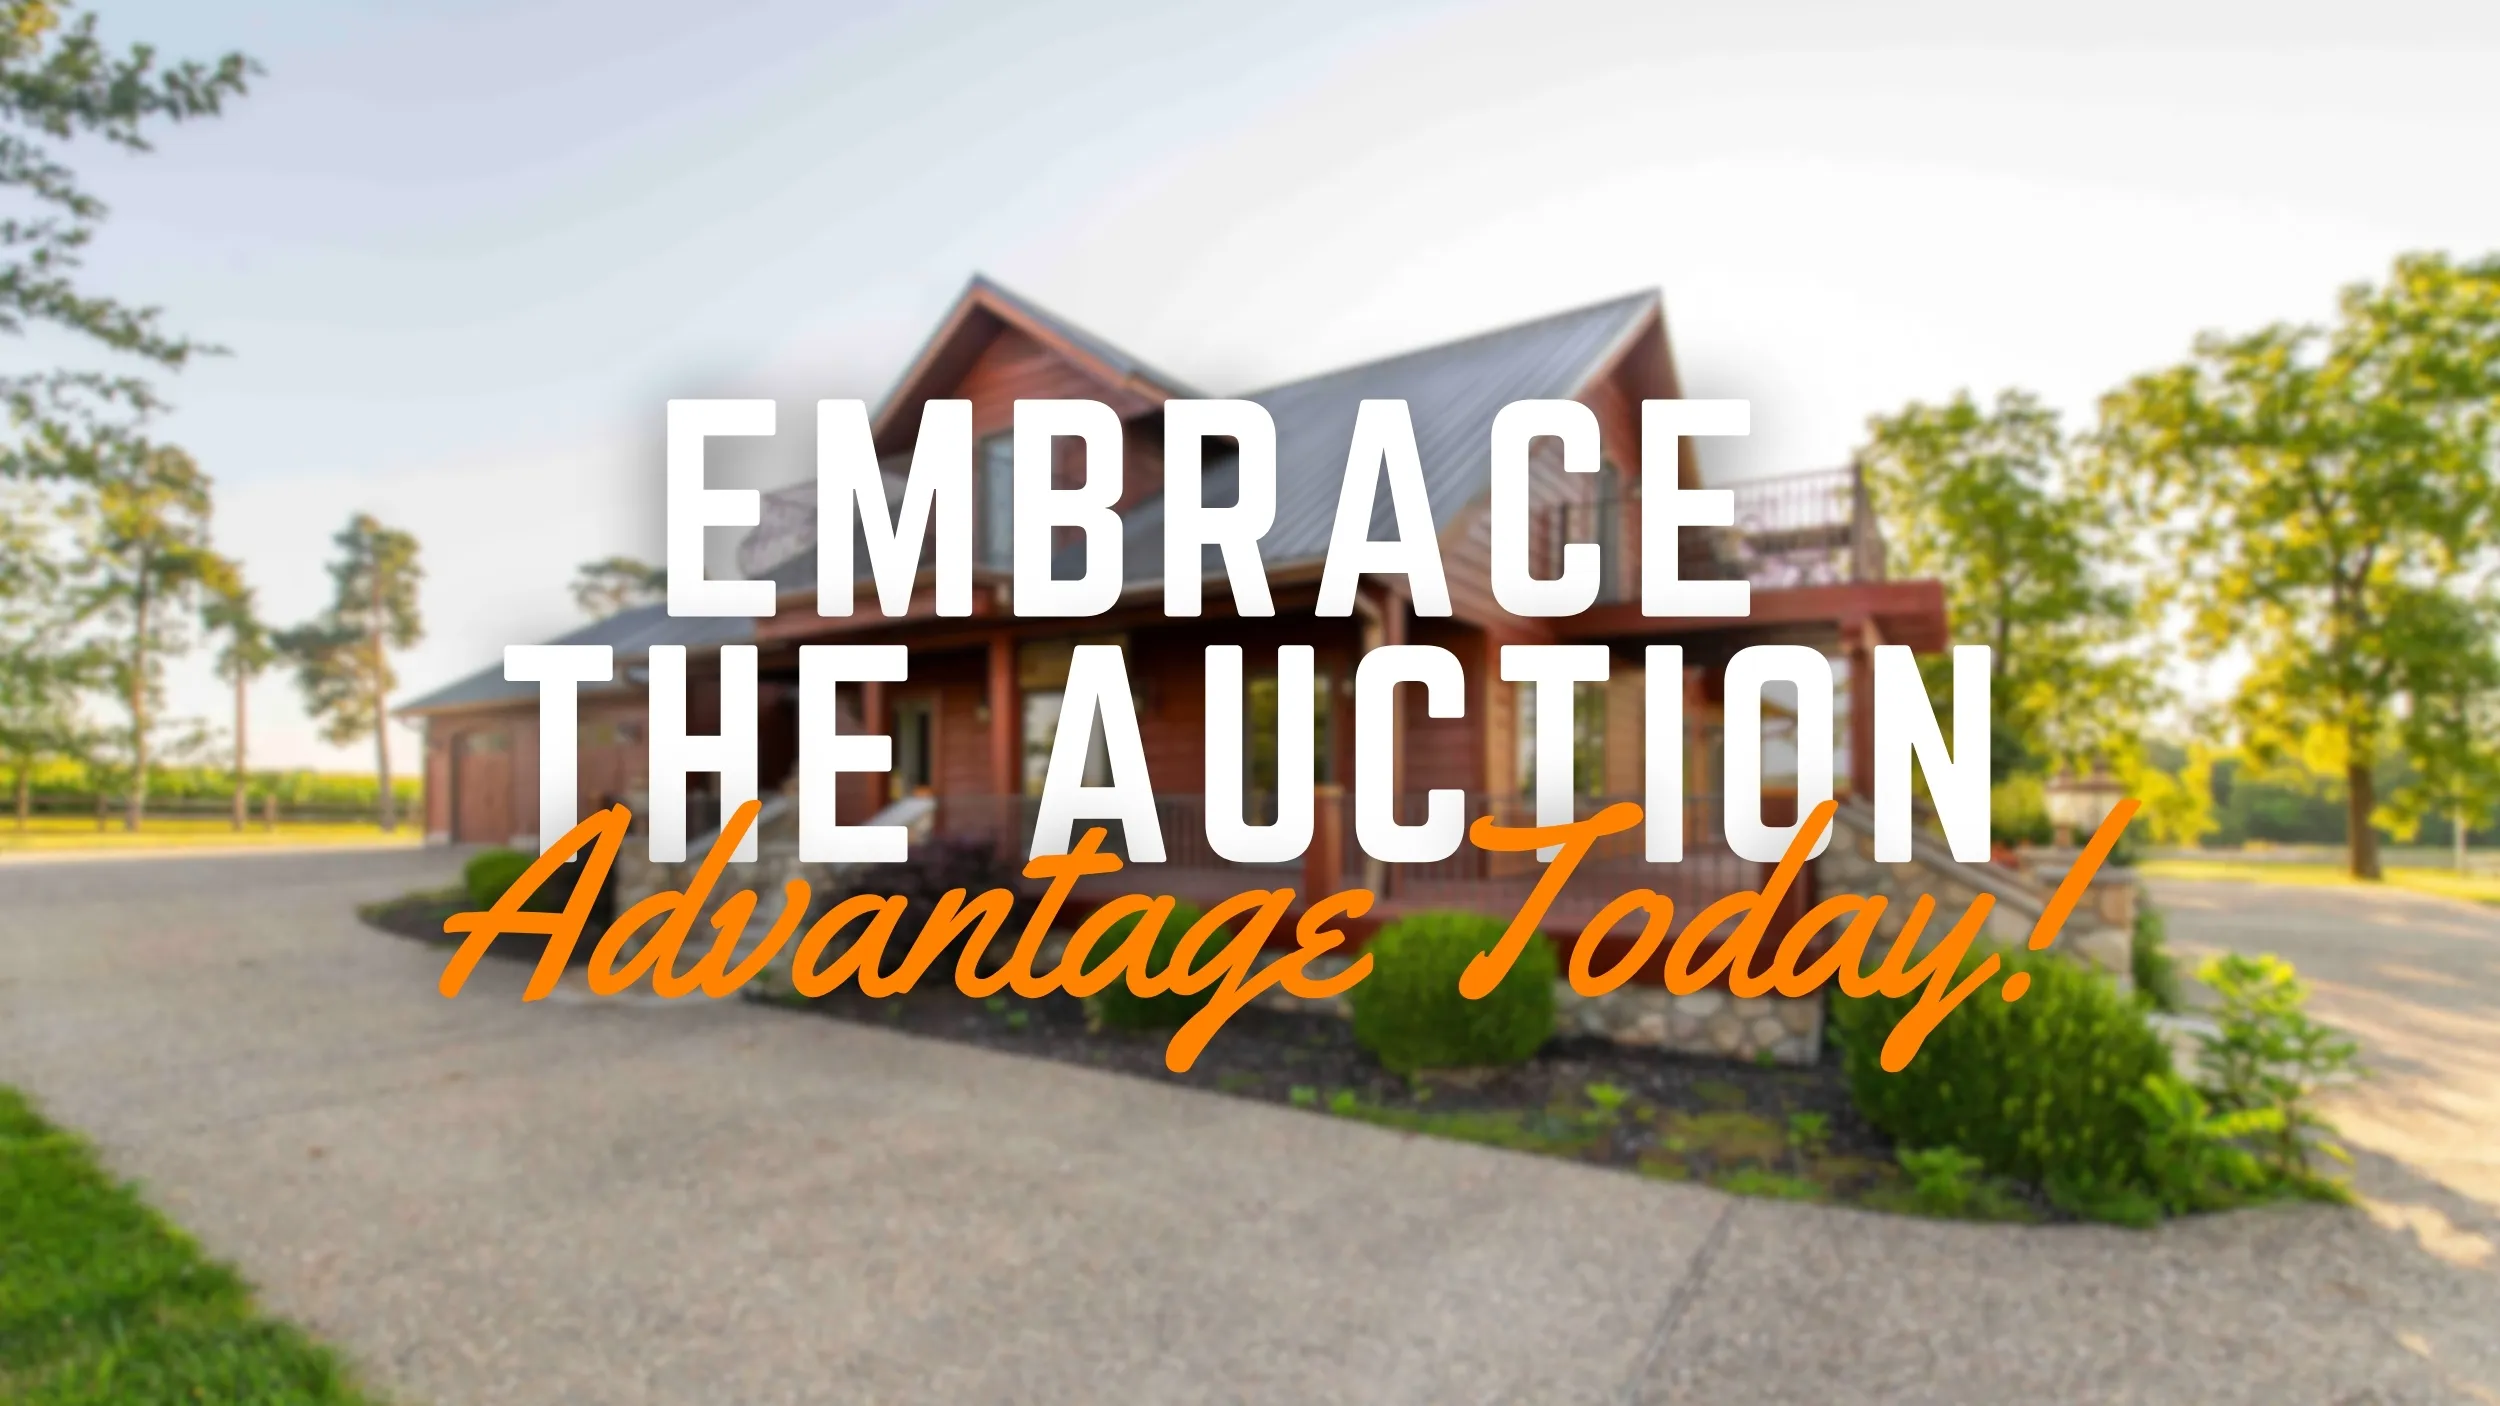 Embrace the Auction Advantage Today!